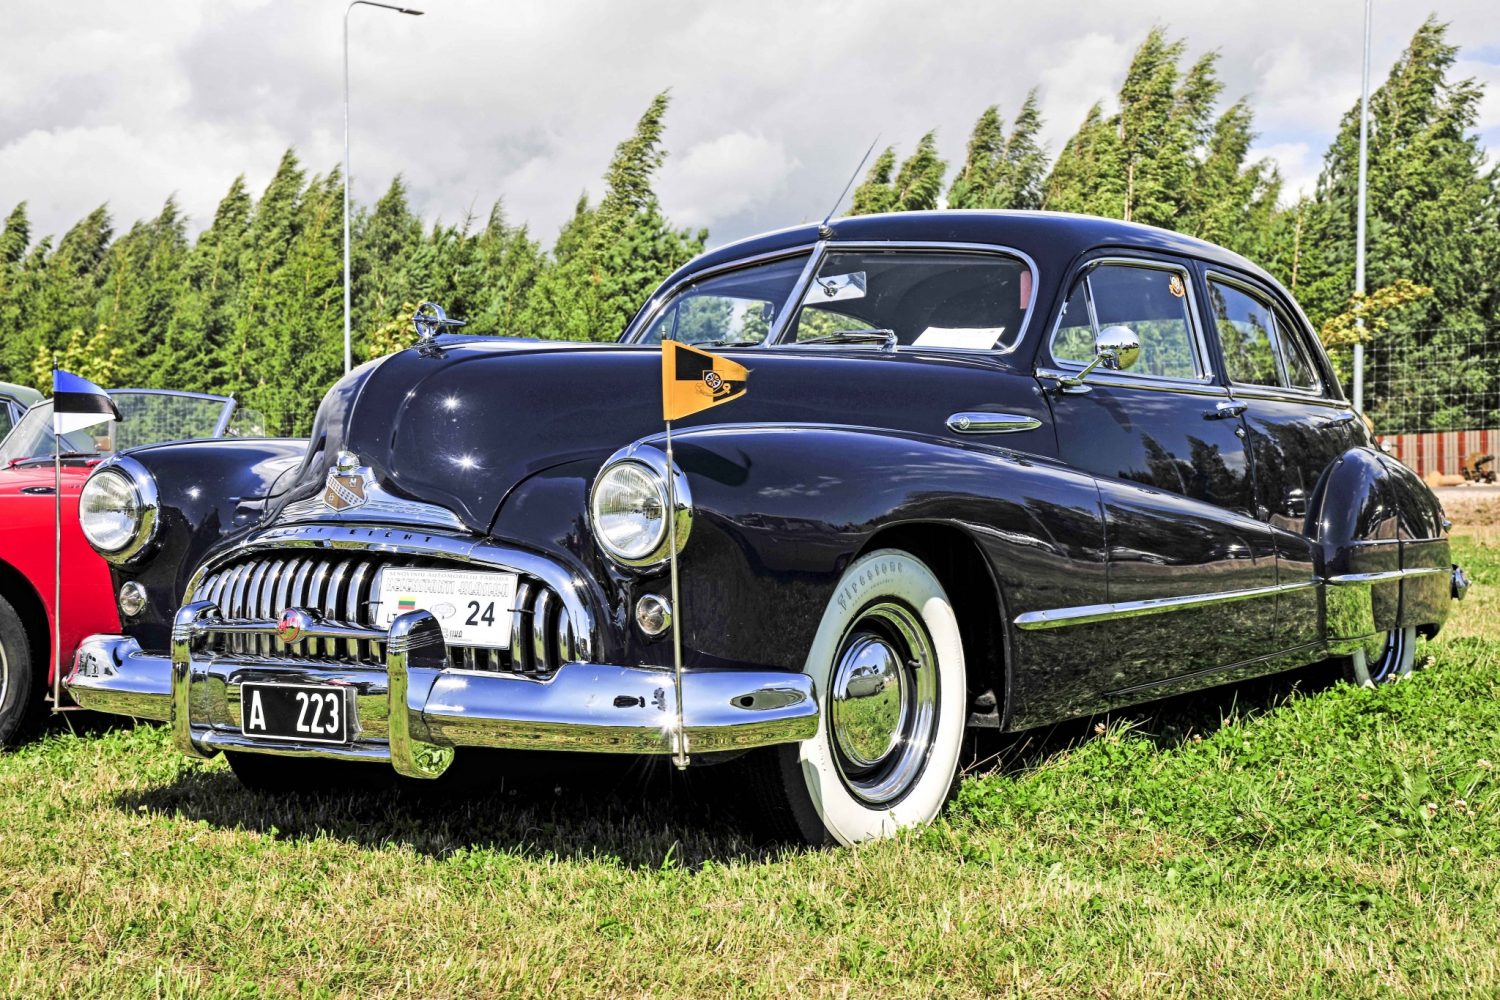 Laimėtojas - geriausio klasikinio automobilio kategorijoje (nuo 1946) - Buick Super 8 Model 51, pagamintas 1947 m. Savininkas – Raivo Hannus